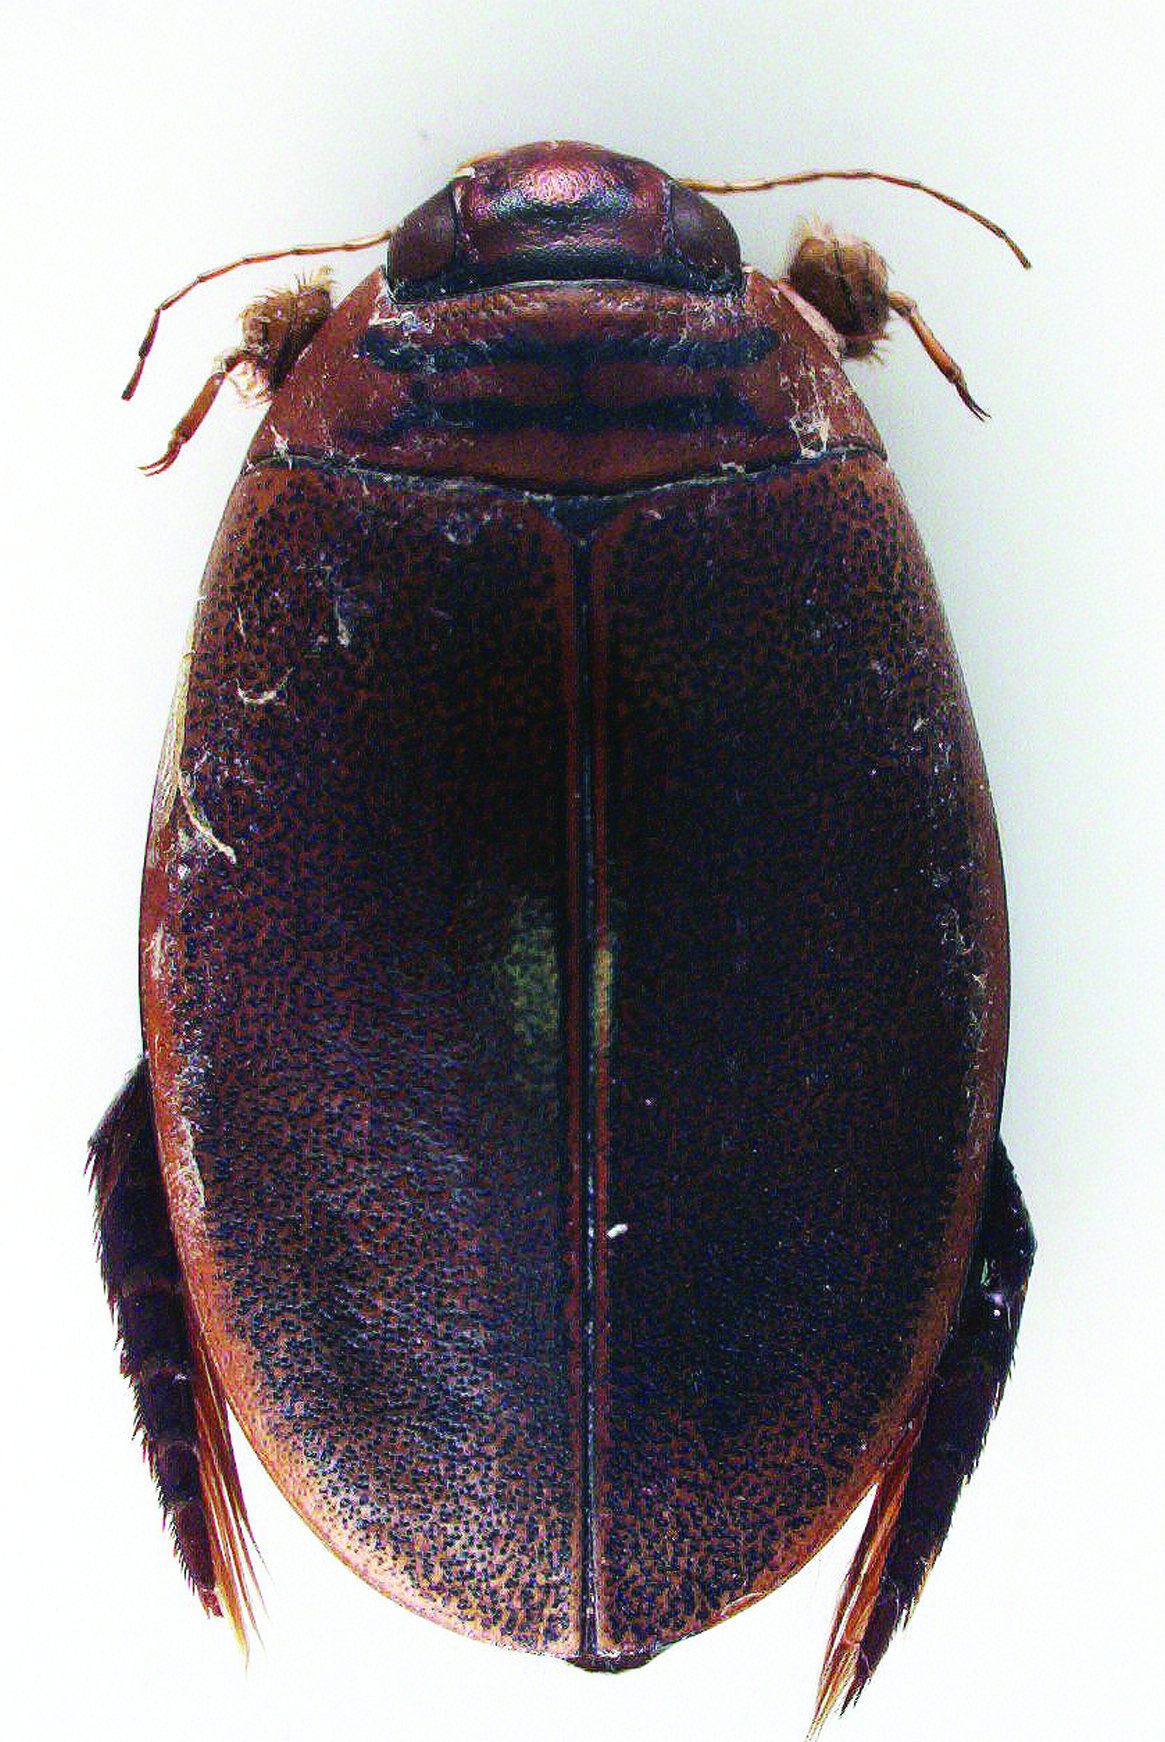 Acilius (Homoeolytrus) duvergeri Gobert, 1874 Nombre común: No existe Tipo: Arthropoda / Clase: Insecta / Orden: Coleoptera / Familia: Dystiscidae Categoría UICN para España: VU B2ab(ii,iii,iv) Foto: